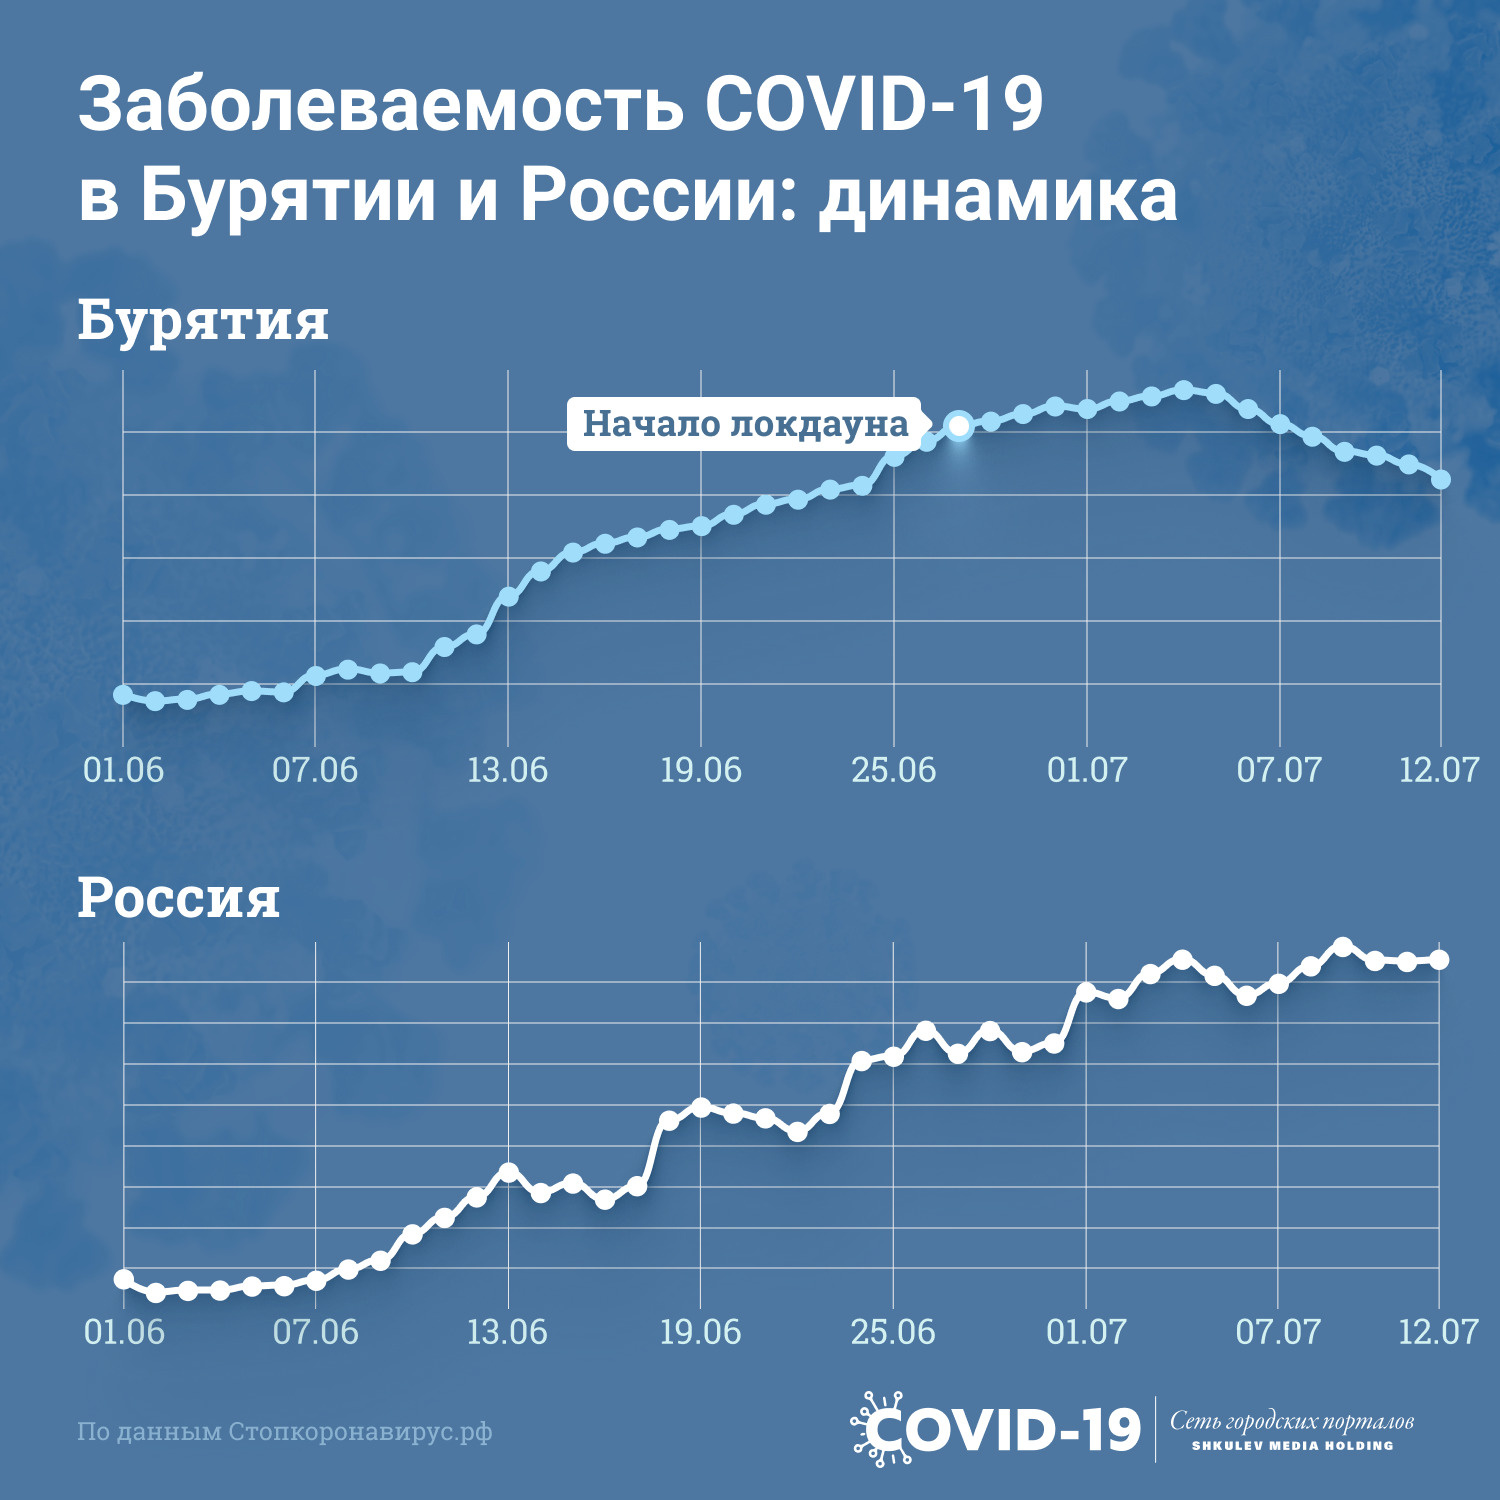 Суточный прирост заболевших по России в среднем составляет 25 тысяч человек